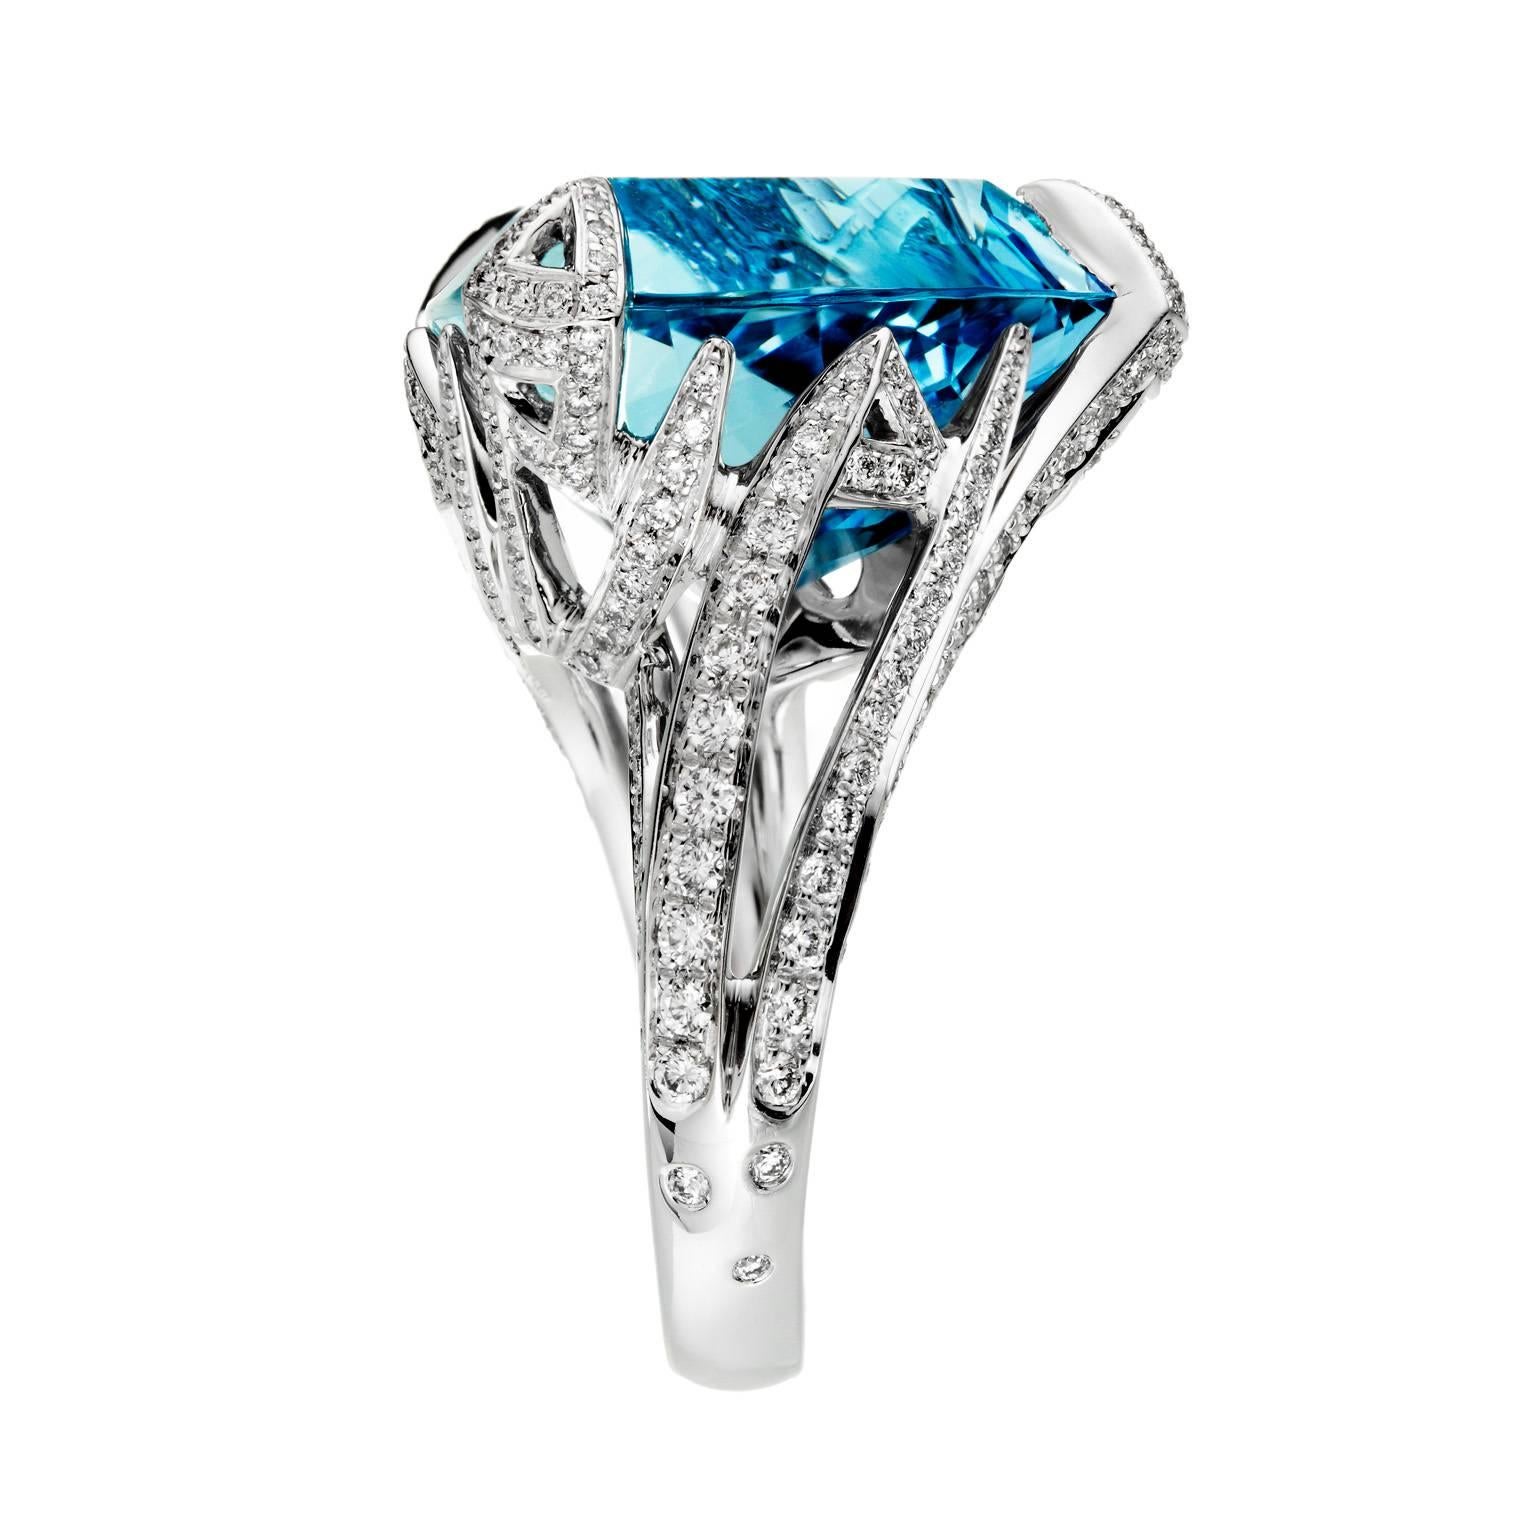 18K White Gold Acquamarine AKILLIS Cruella ring set with Aquamarine and white diamonds
Aquamarine (cts): 18,34. The dimensions of the stone are: 1.2 cm (height), 2 cm (diameter). Diamonds (cts): 0,74 

CRUELLA is where rock meets baroque, showcasing